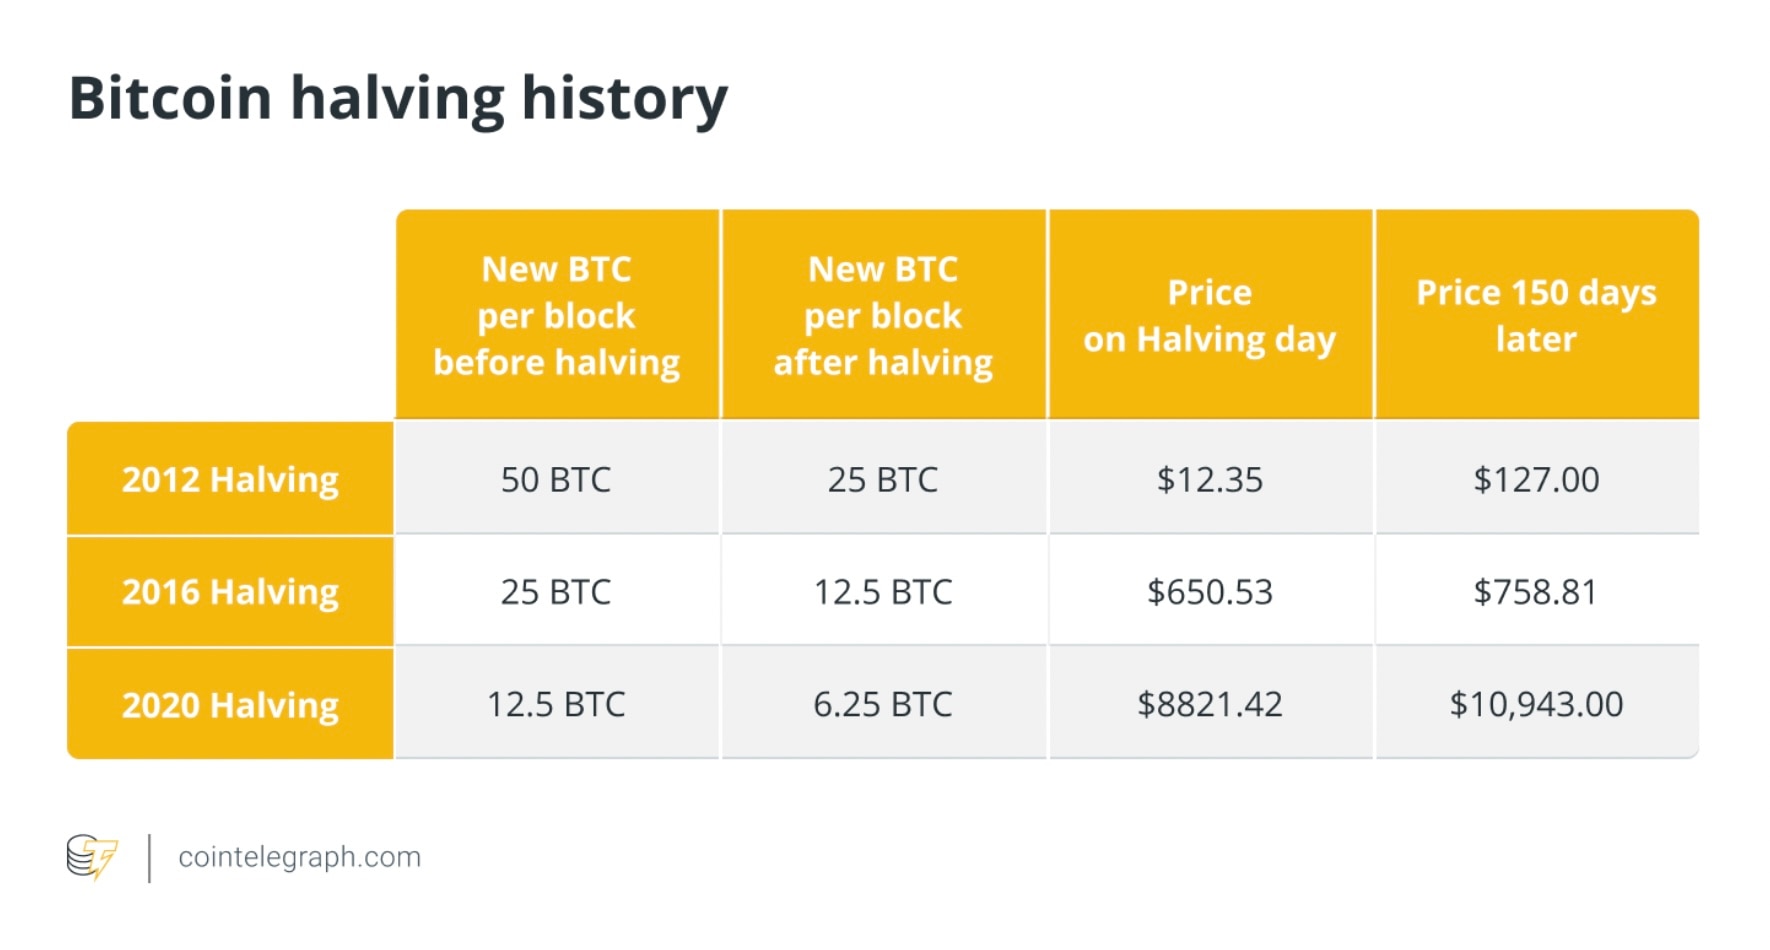 Giá Bitcoin sau sự kiện halving năm 2012, 2016 và 2020